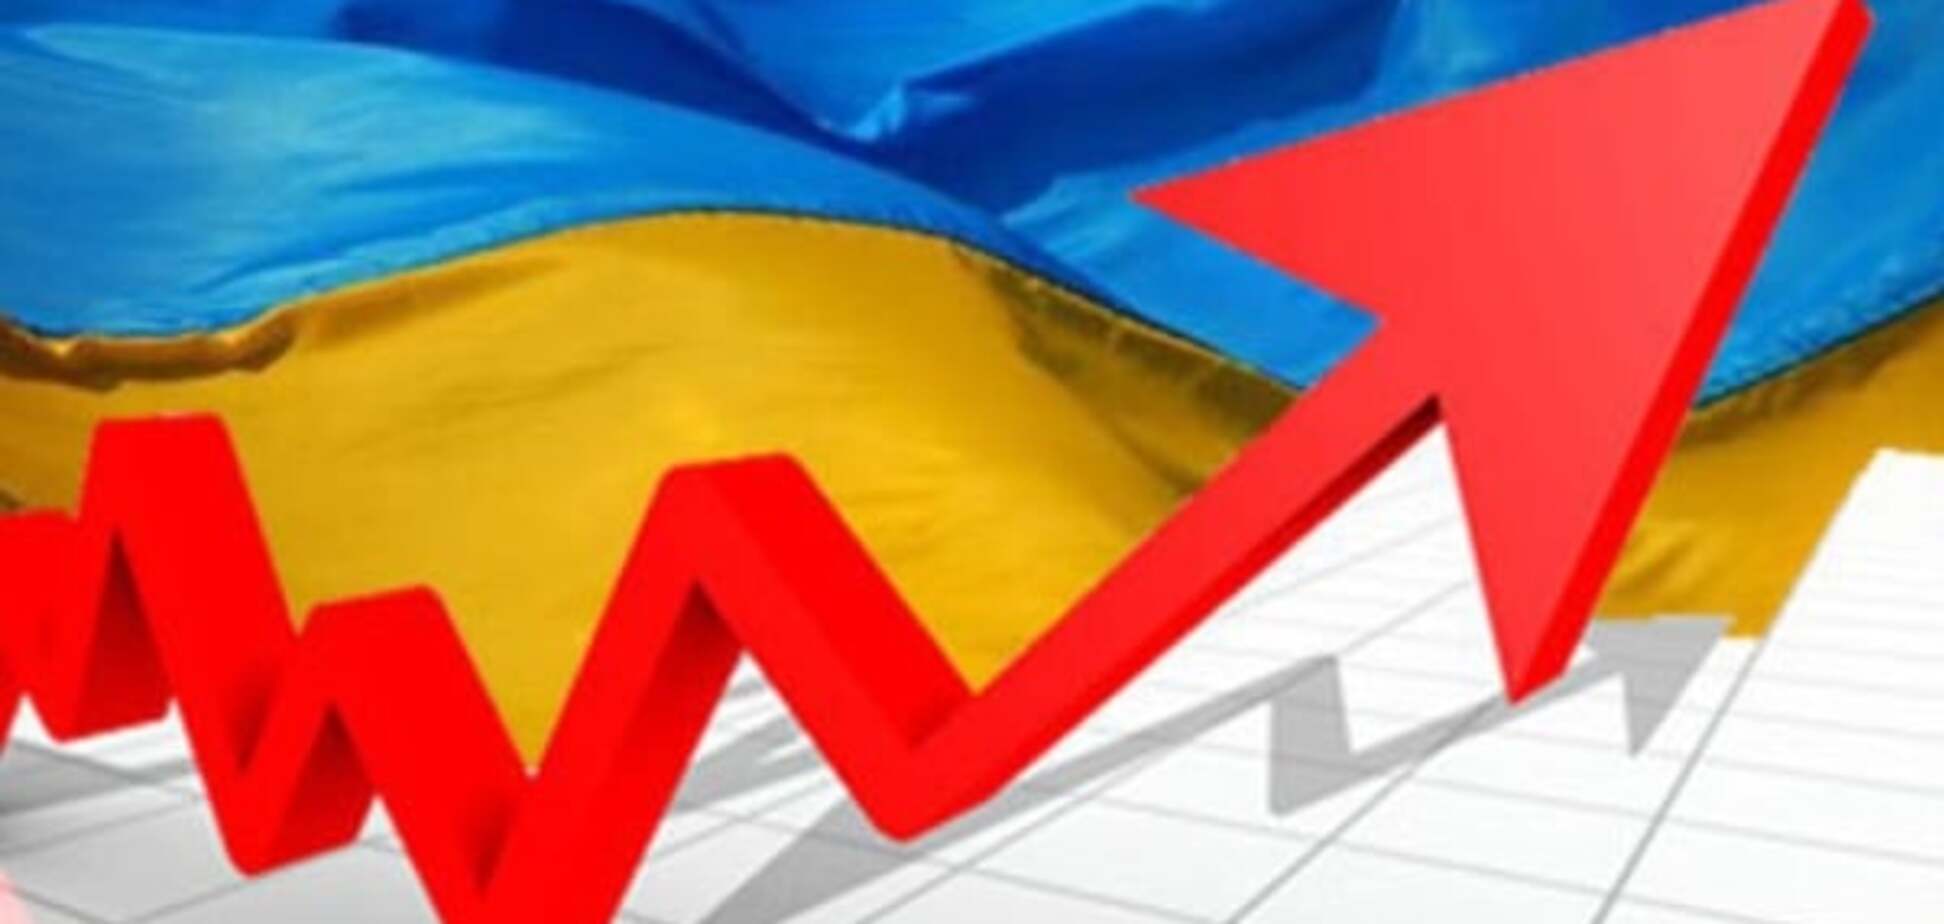 Не все так просто: 11 фактов, разрушающих мифы об украинской экономике